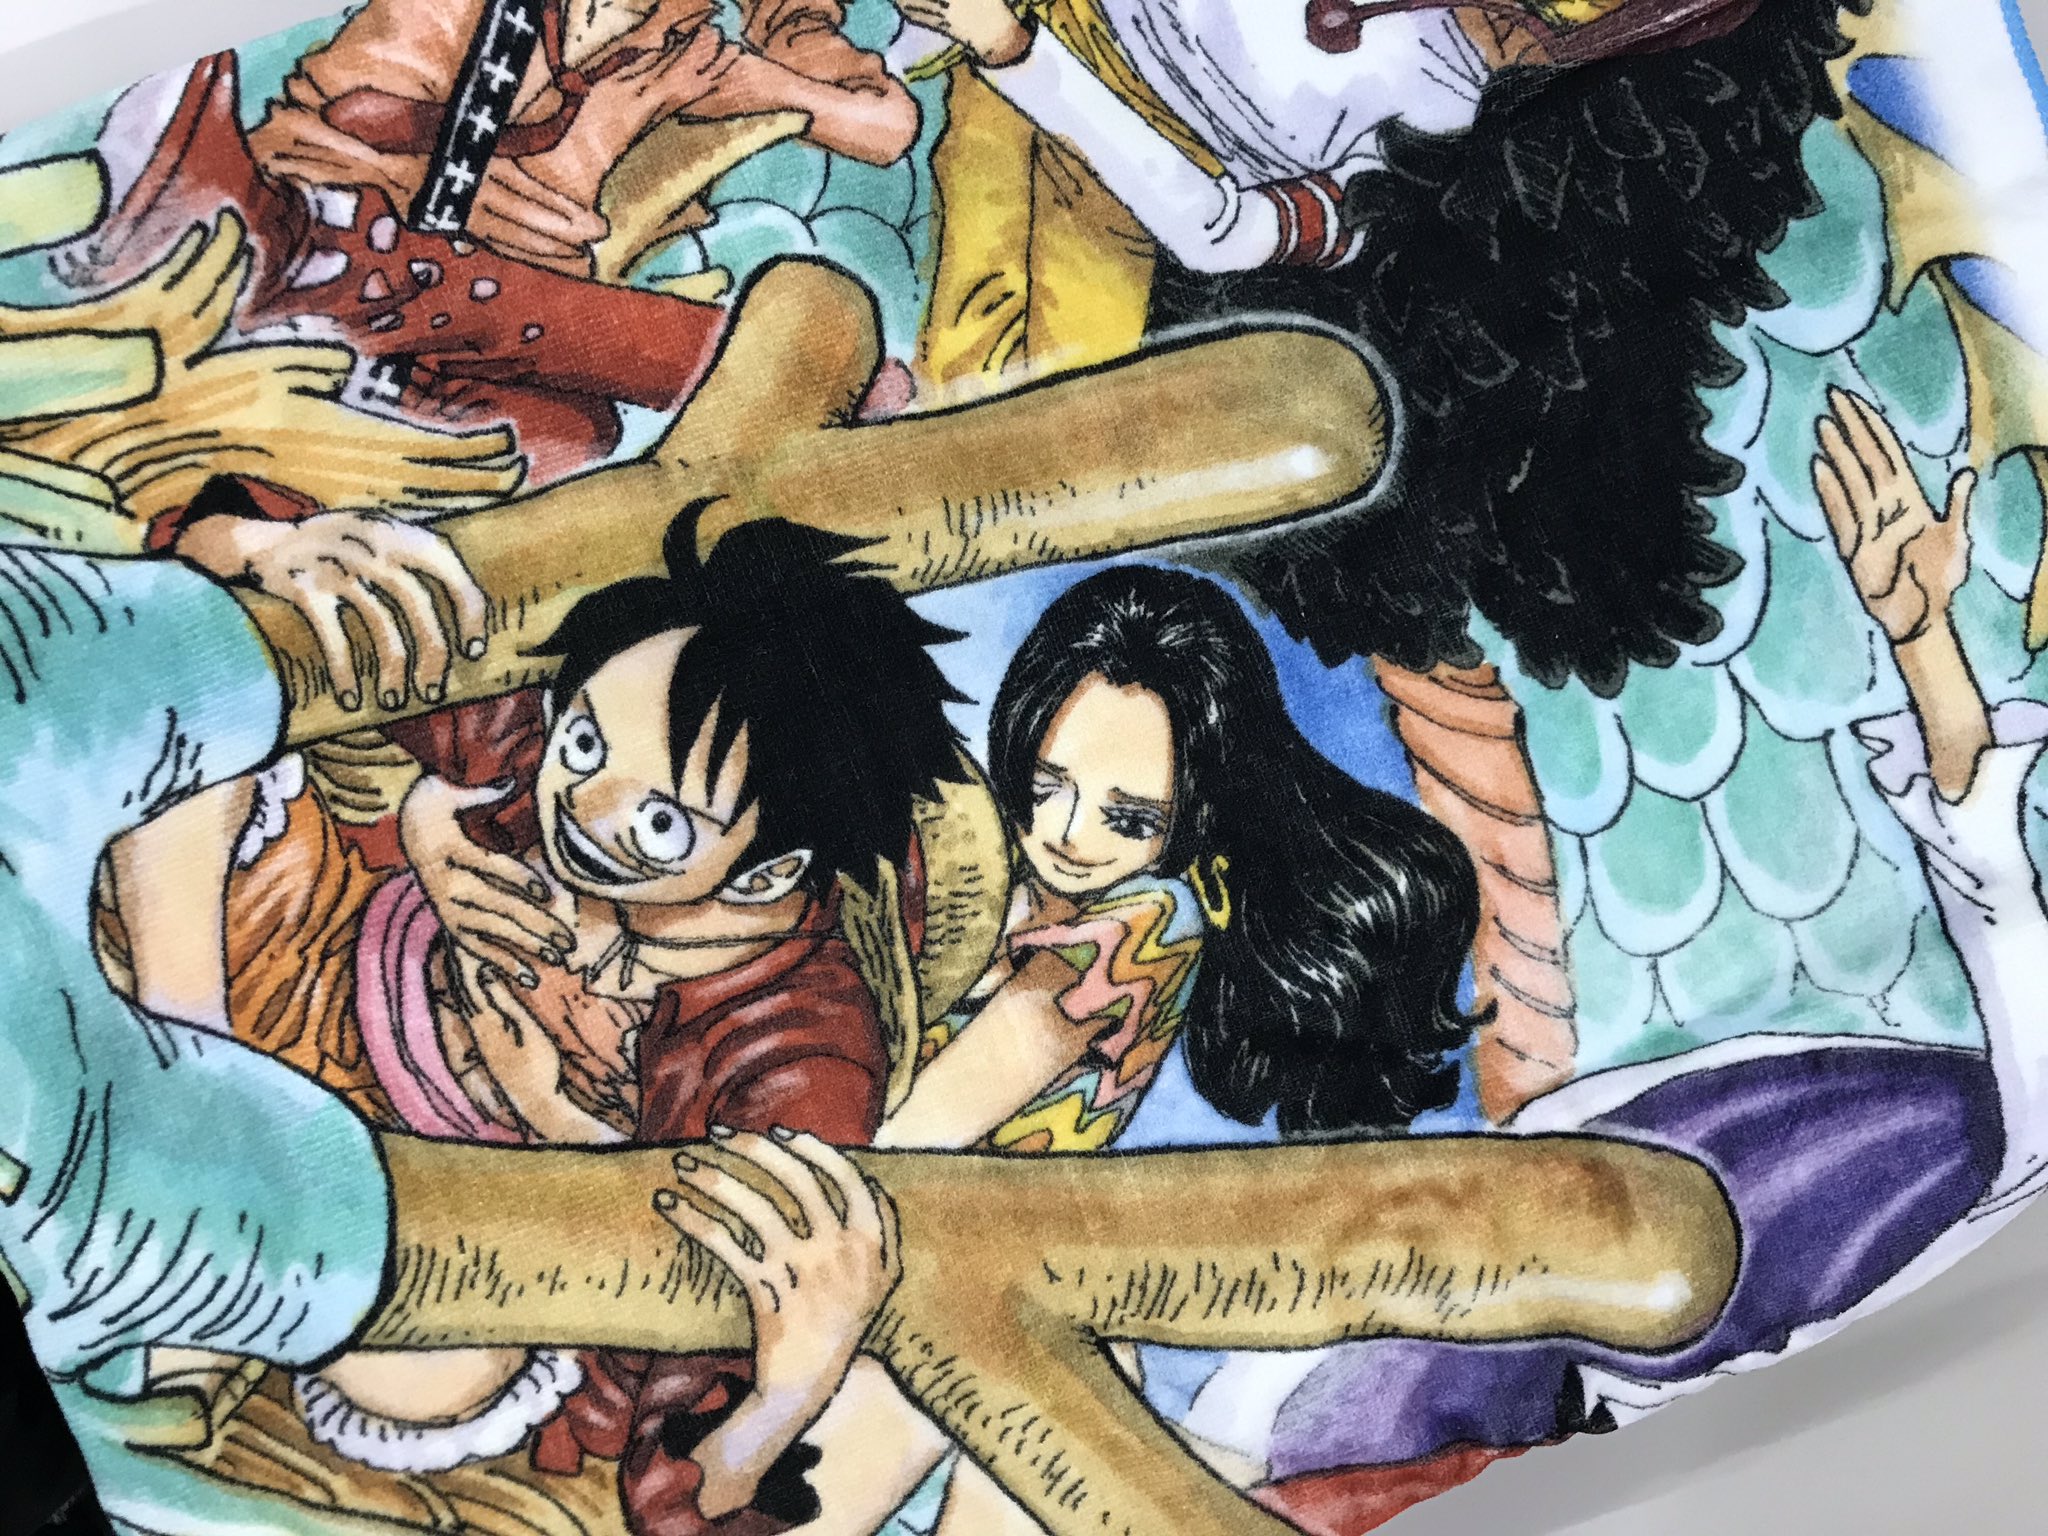 One Piece スタッフ 公式 Official 9月2日はハンコックの誕生日 お祝いのコメントやイラストありがとう 各種アプリでも盛り上がってるからrtを要チェックだ 編集部からはそんな可愛いハンコックもいるbigタオルをプレゼント このツイートを